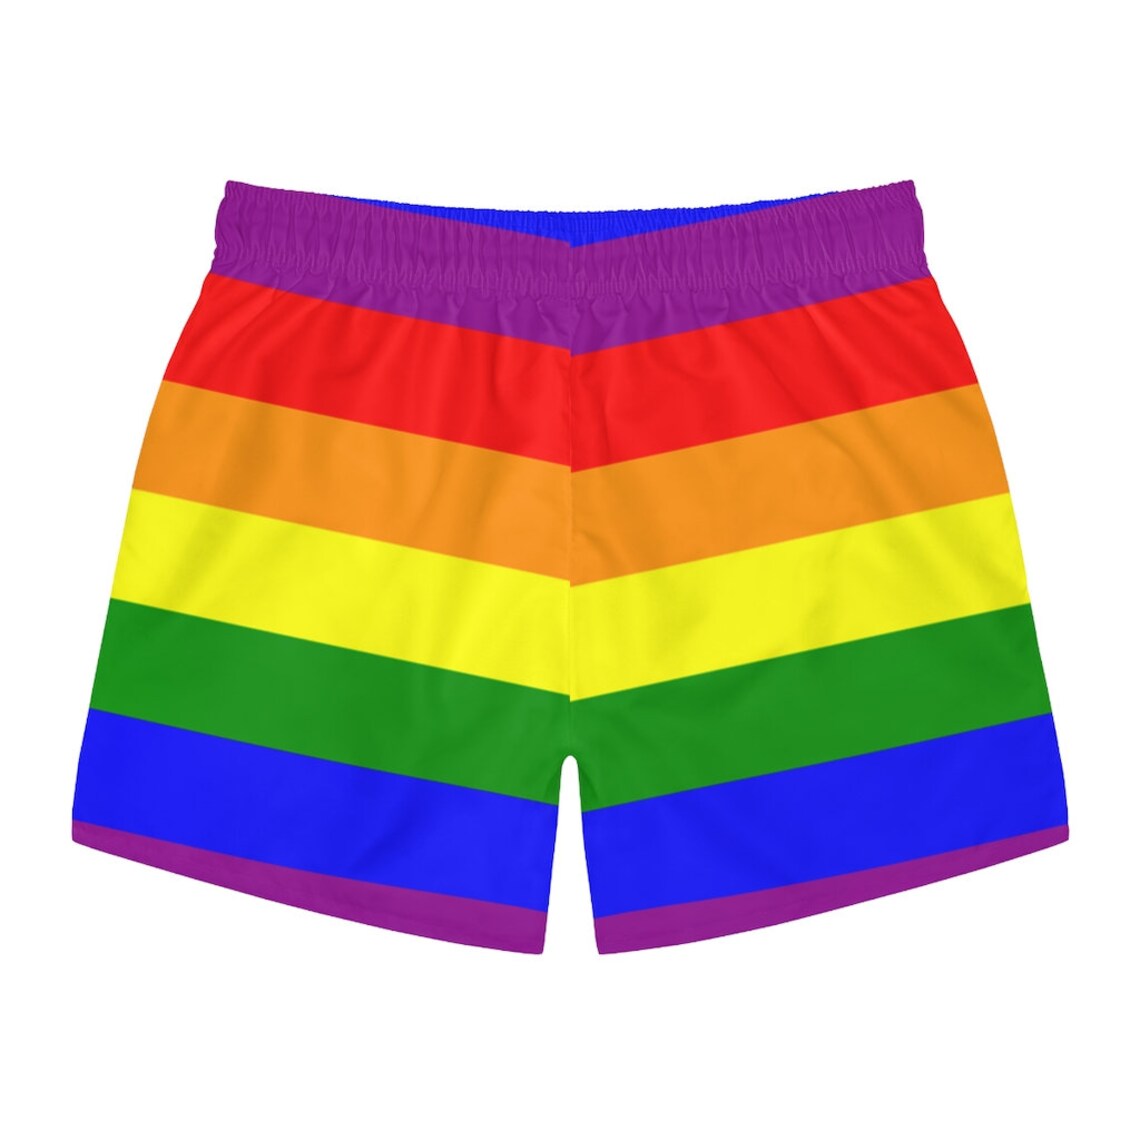 Mens Rainbow Stripe Gay Pride LGBT LGBTQ Bathing Suit Swim | Etsy